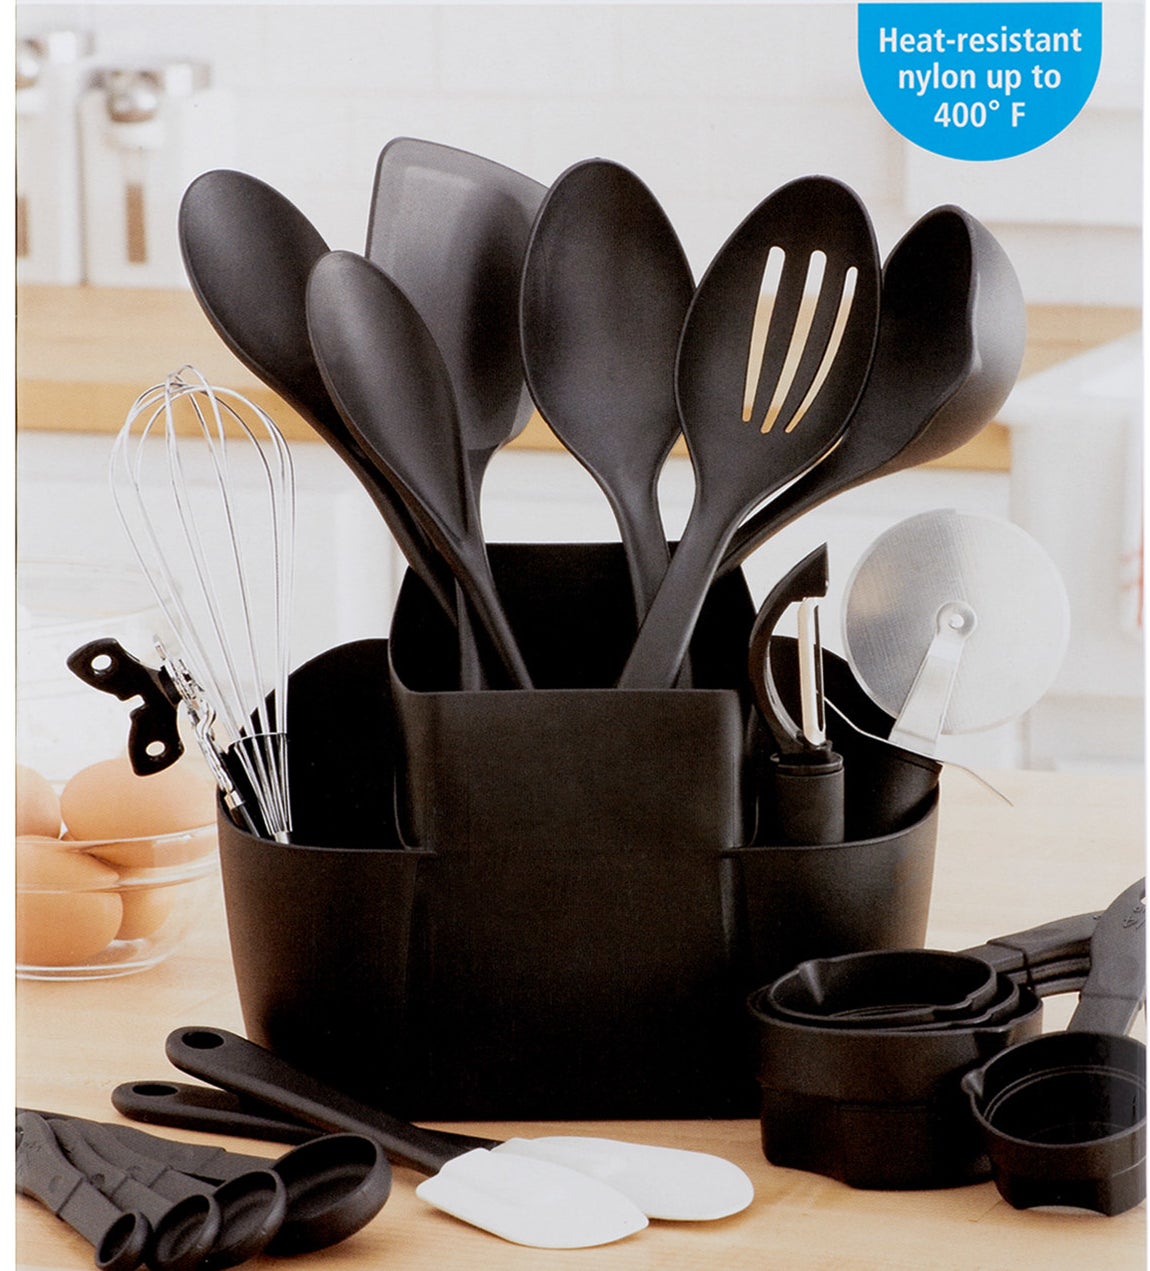 The 21-piece kitchen utensils set